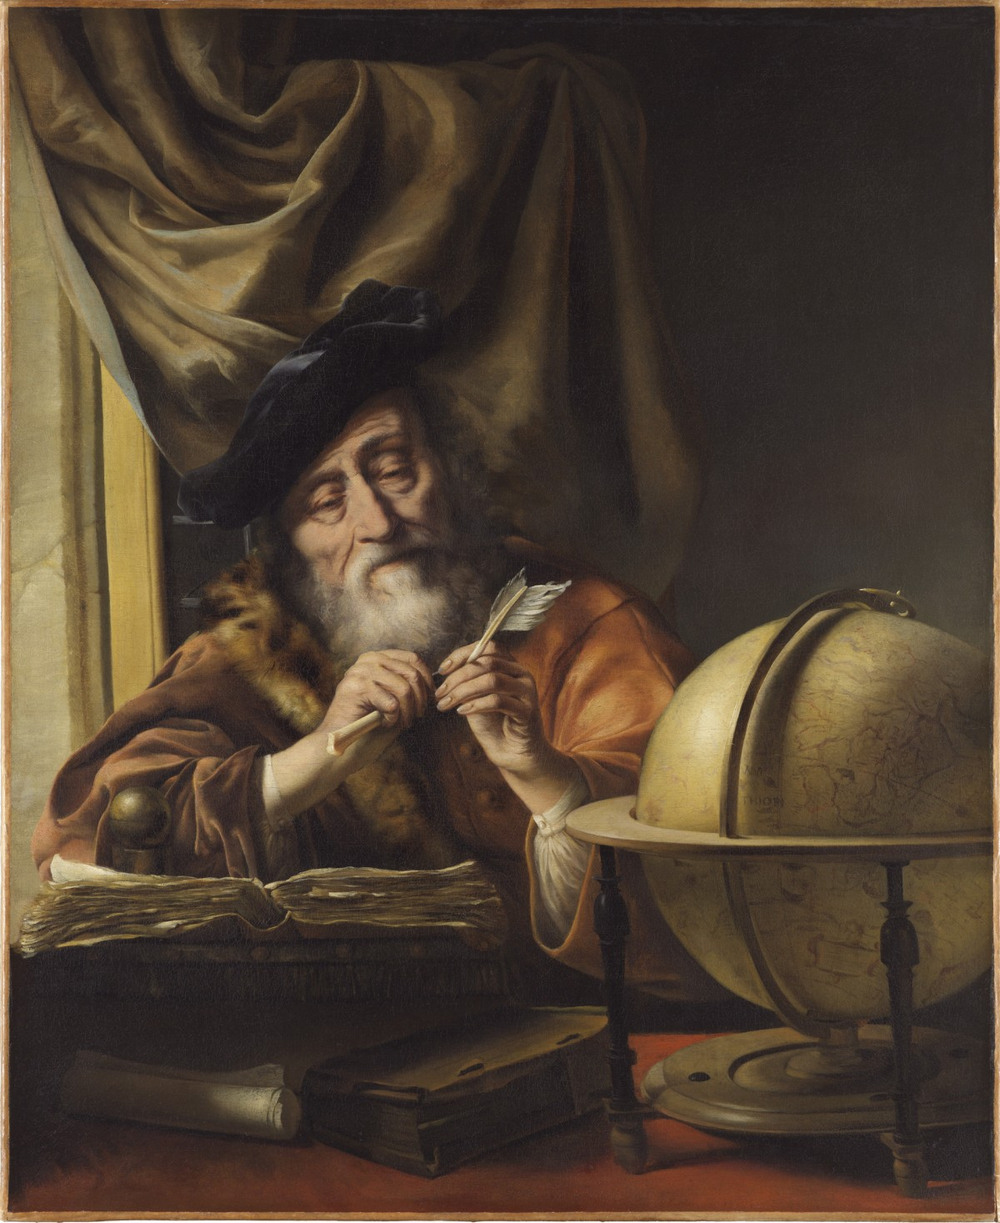 Лейденская коллекция доступна онлайн. Частный коллекционер опубликовал картины золотого века голландской живописи  15